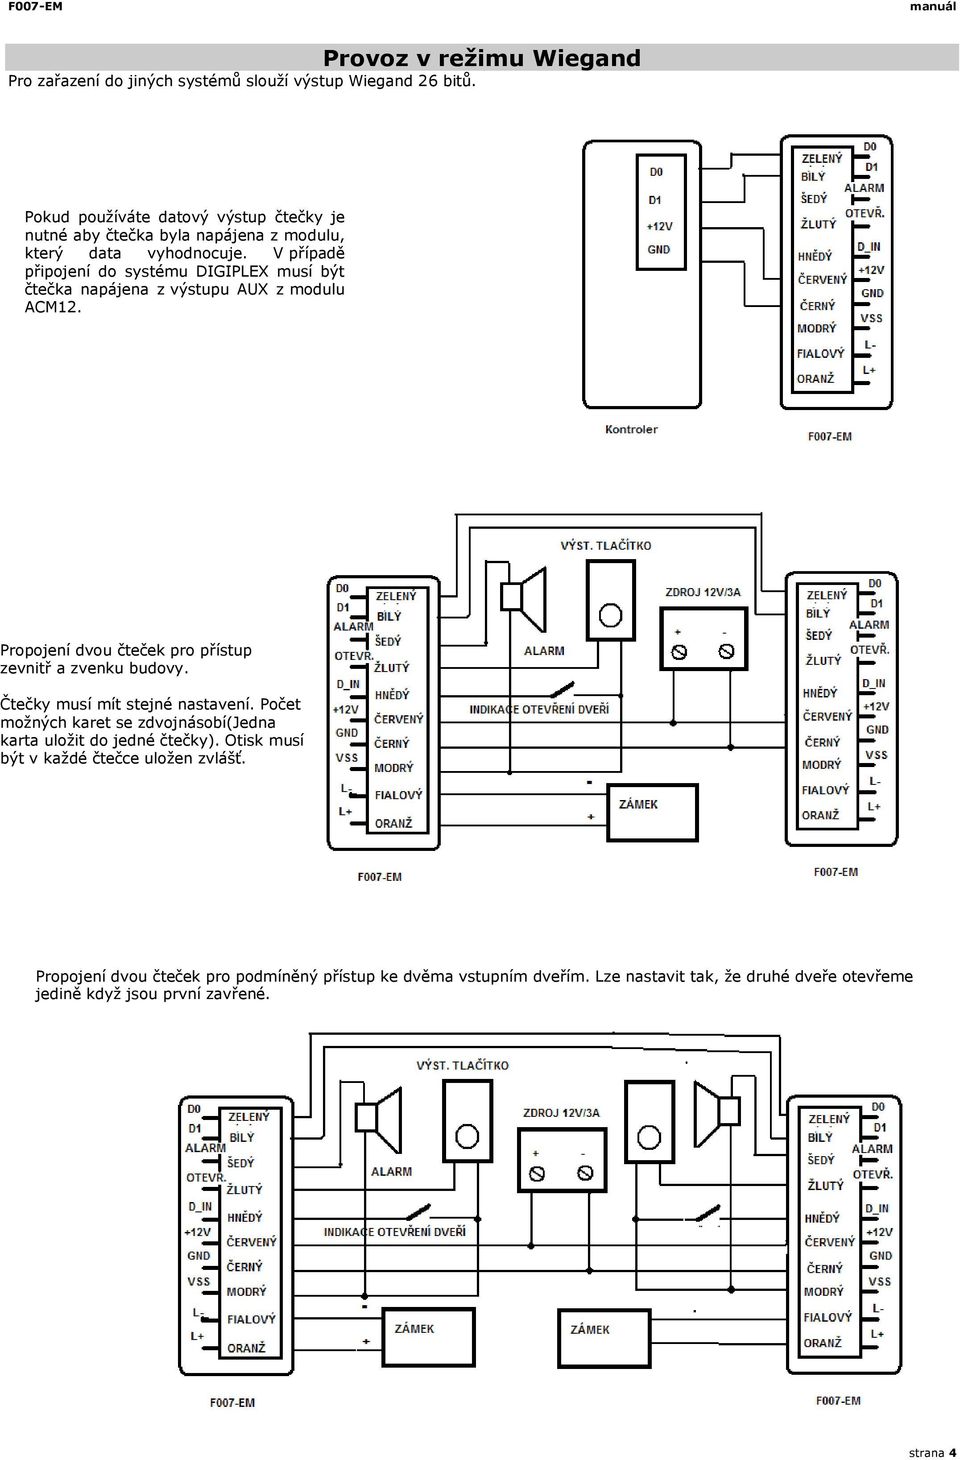 V případě připojení do systému DIGIPLEX musí být čtečka napájena z výstupu AUX z modulu ACM2. Propojení dvou čteček pro přístup zevnitř a zvenku budovy.